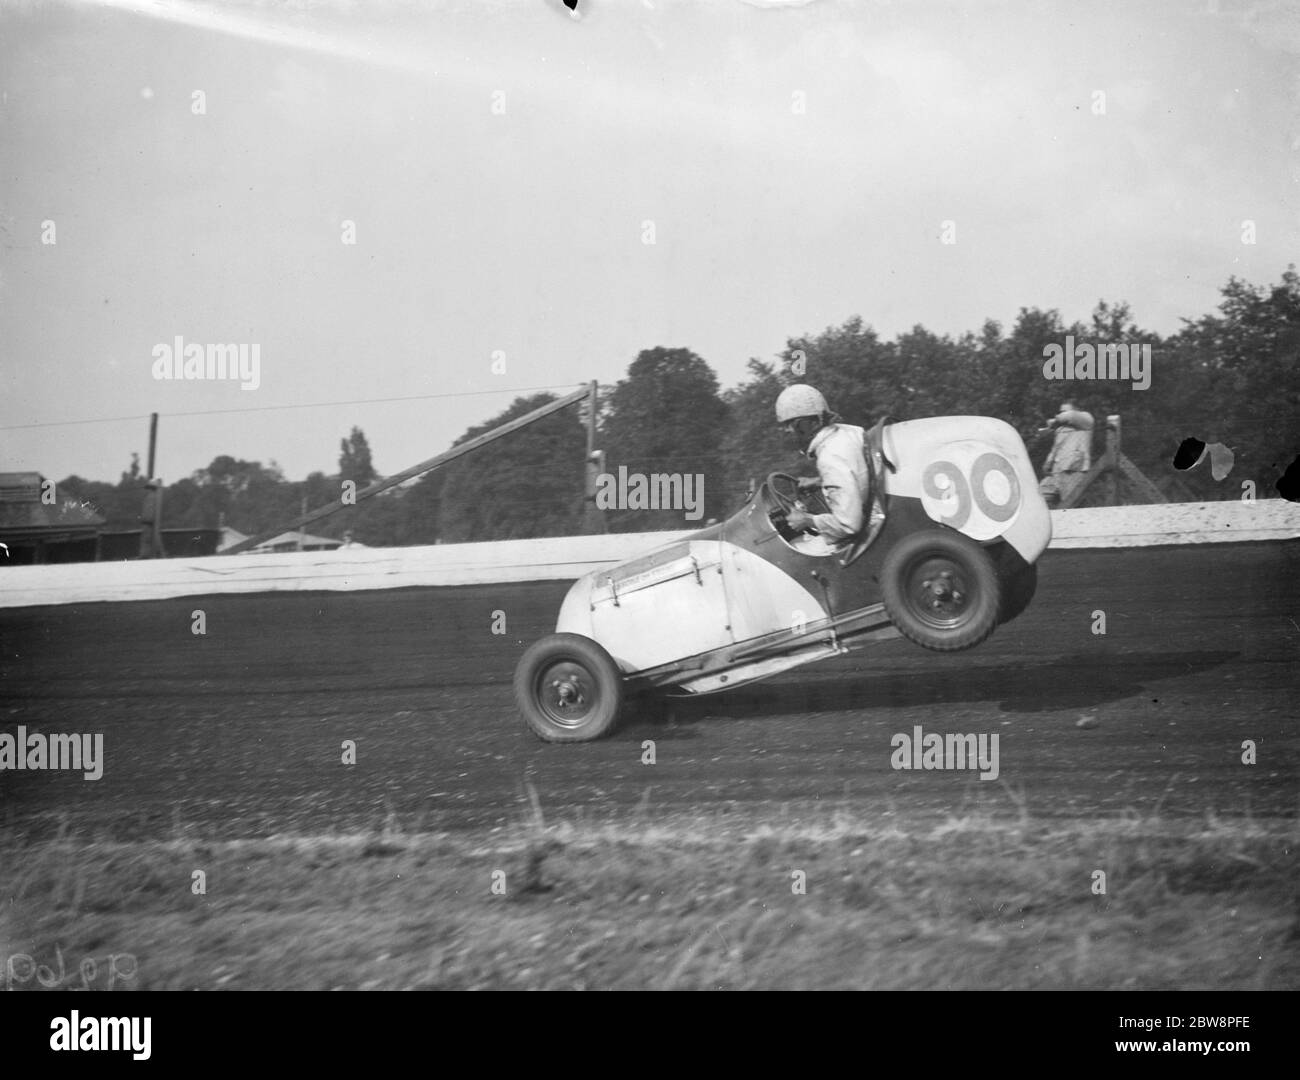 Le Grand prix de la course de voitures miniatures Crystal Palace . Frank Chiswell lève l'arrière de sa voiture de course . 1938 Banque D'Images